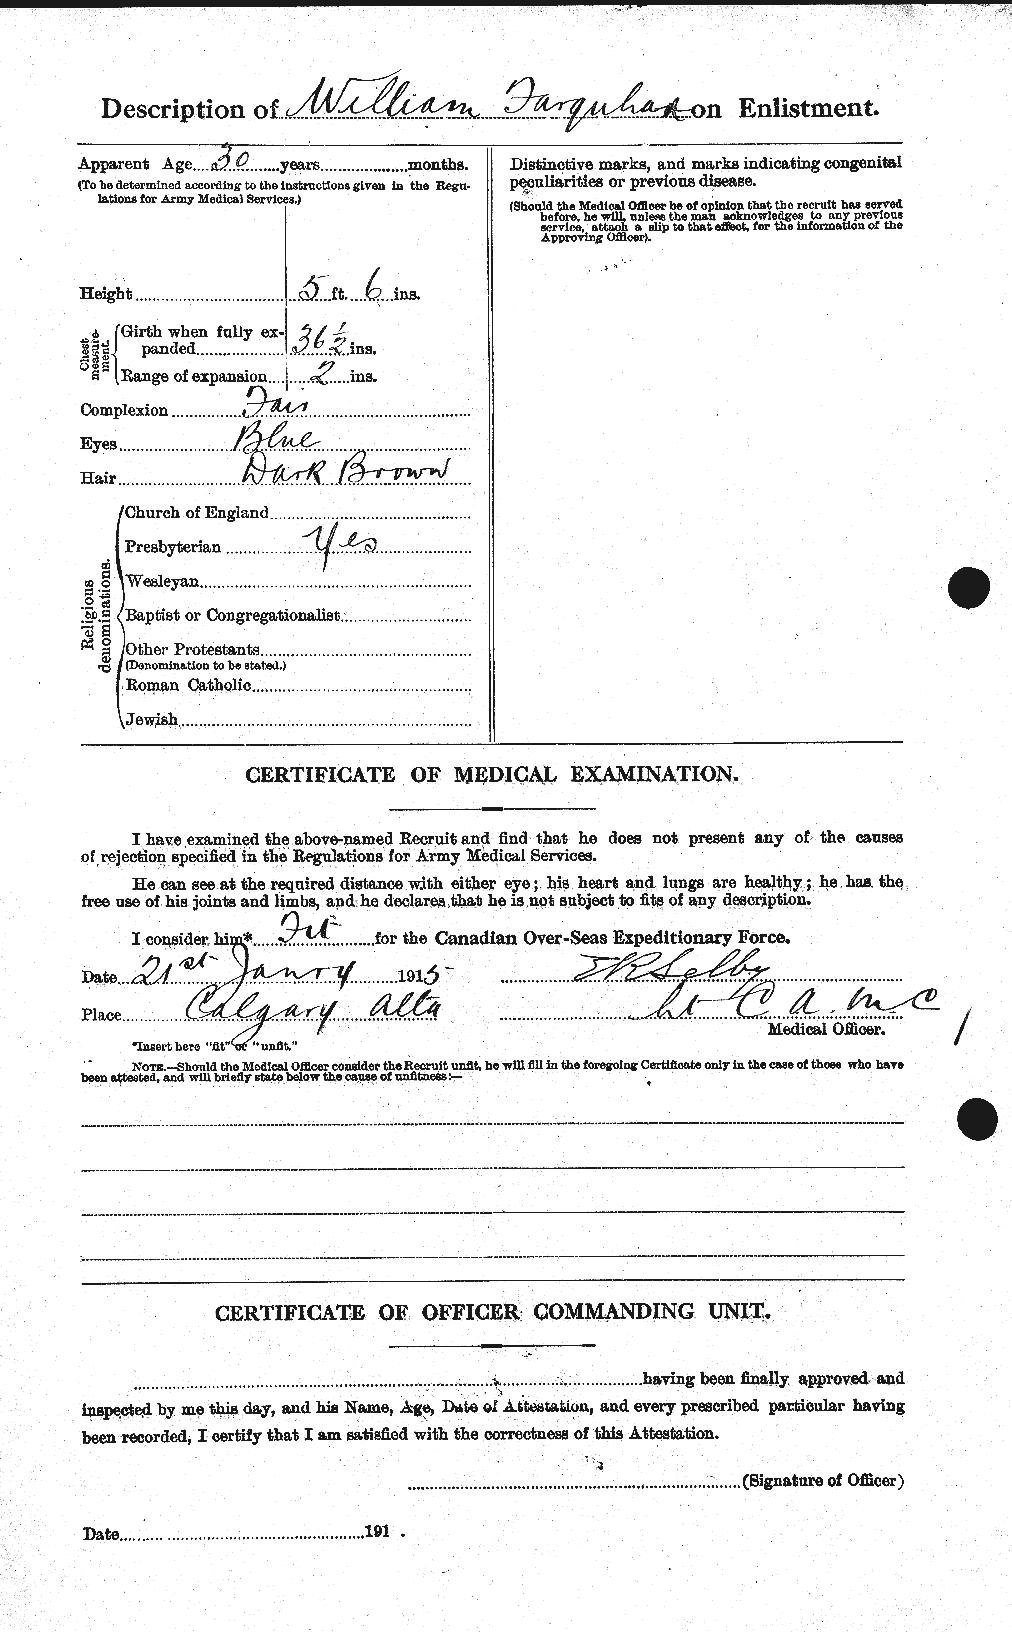 Dossiers du Personnel de la Première Guerre mondiale - CEC 318800b